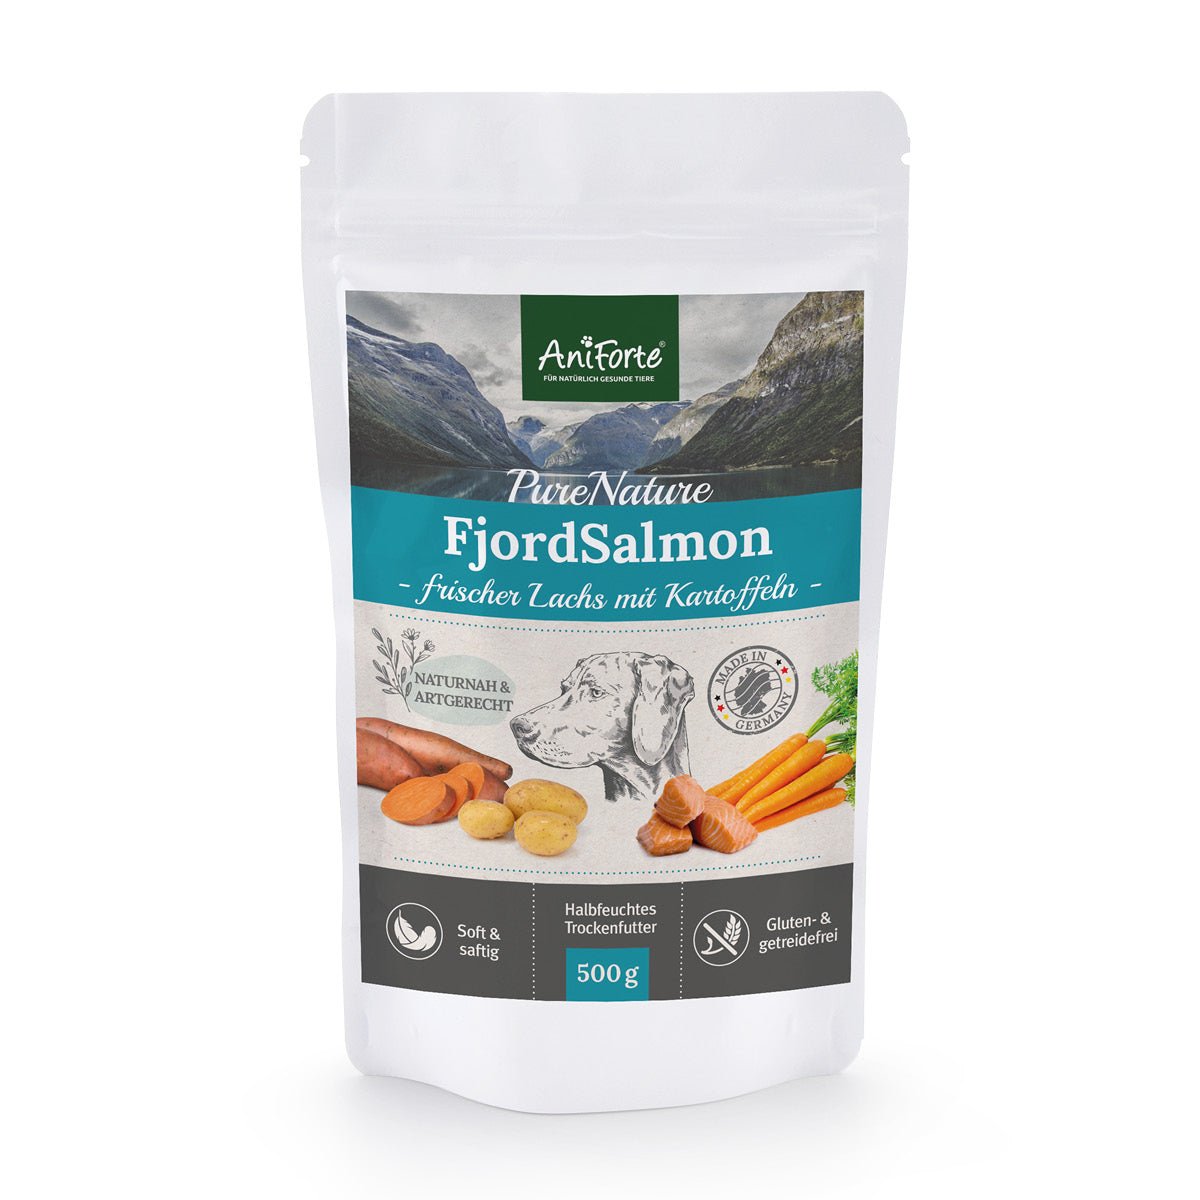 PureNature FjordSalmon – frischer Lachs mit Kartoffeln - AniForte